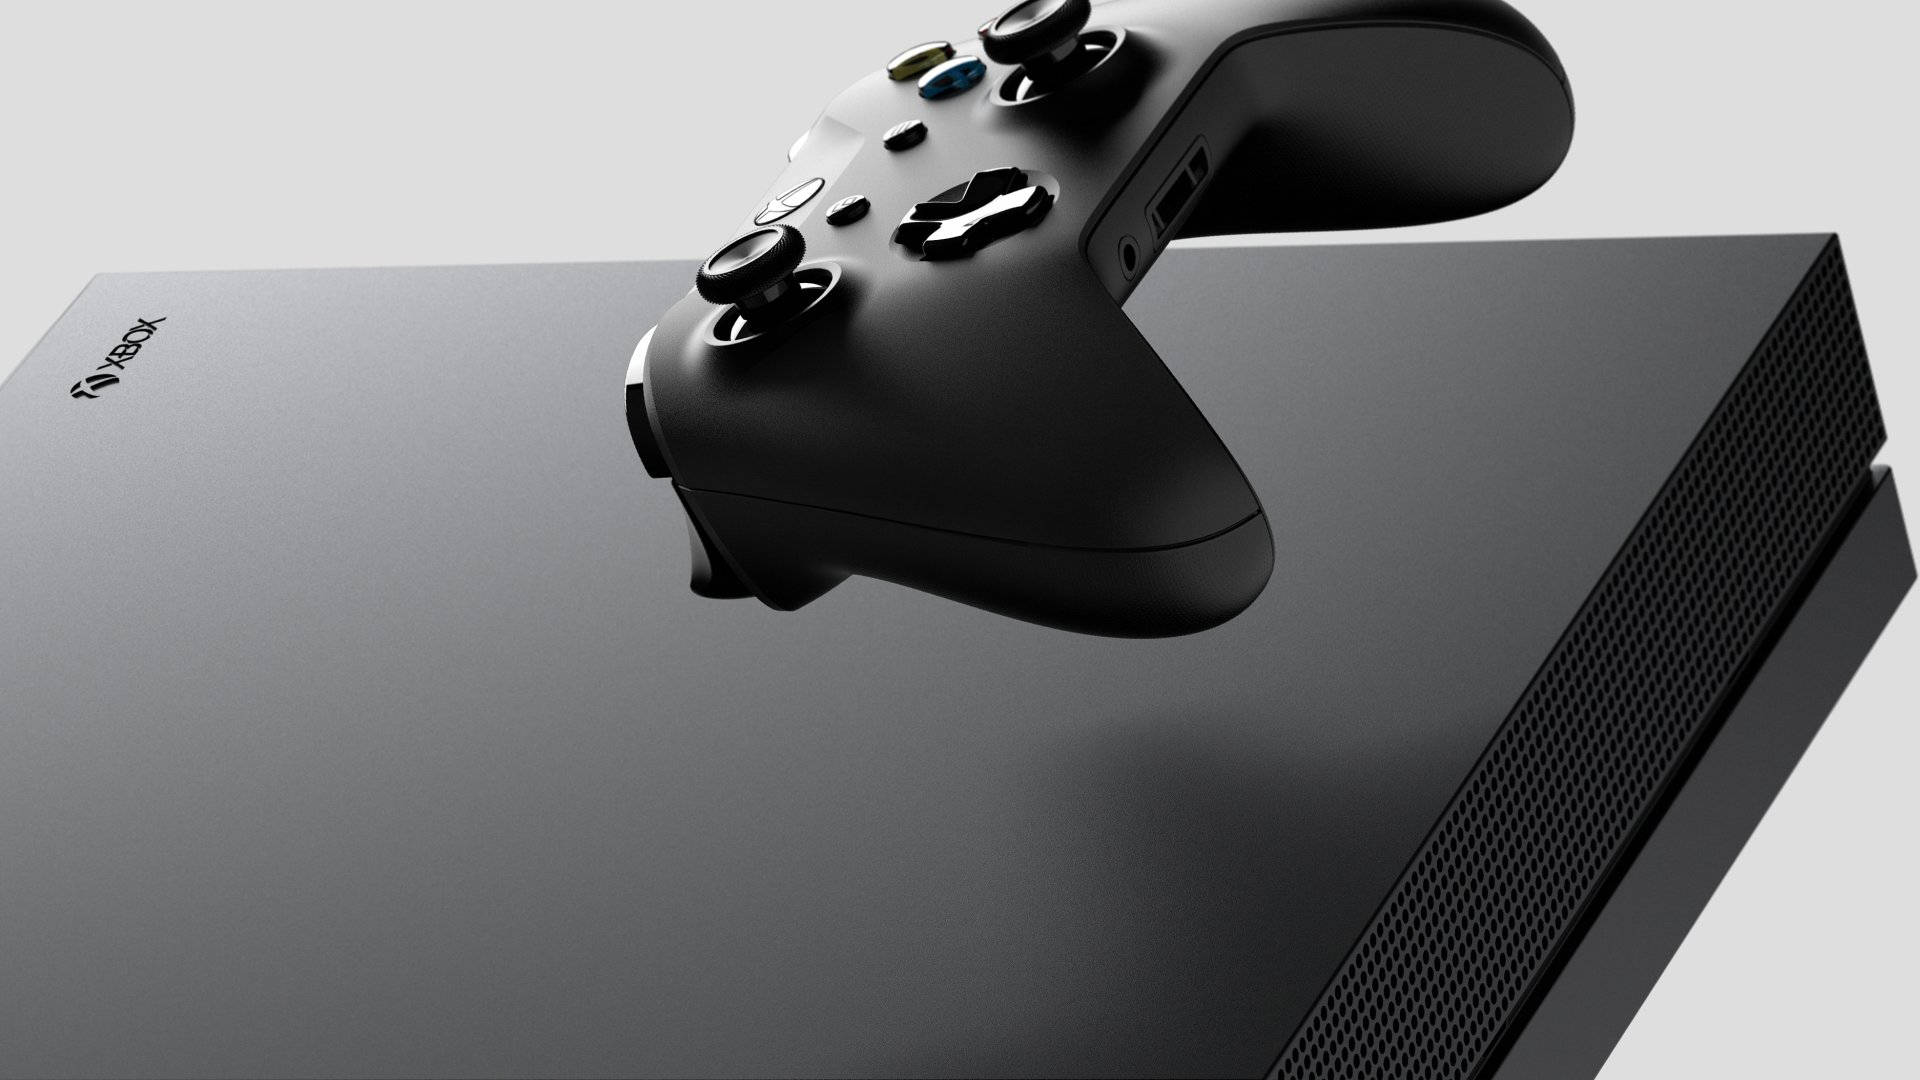 Xbox One X konsol og ny controller baggrundsbillede Wallpaper